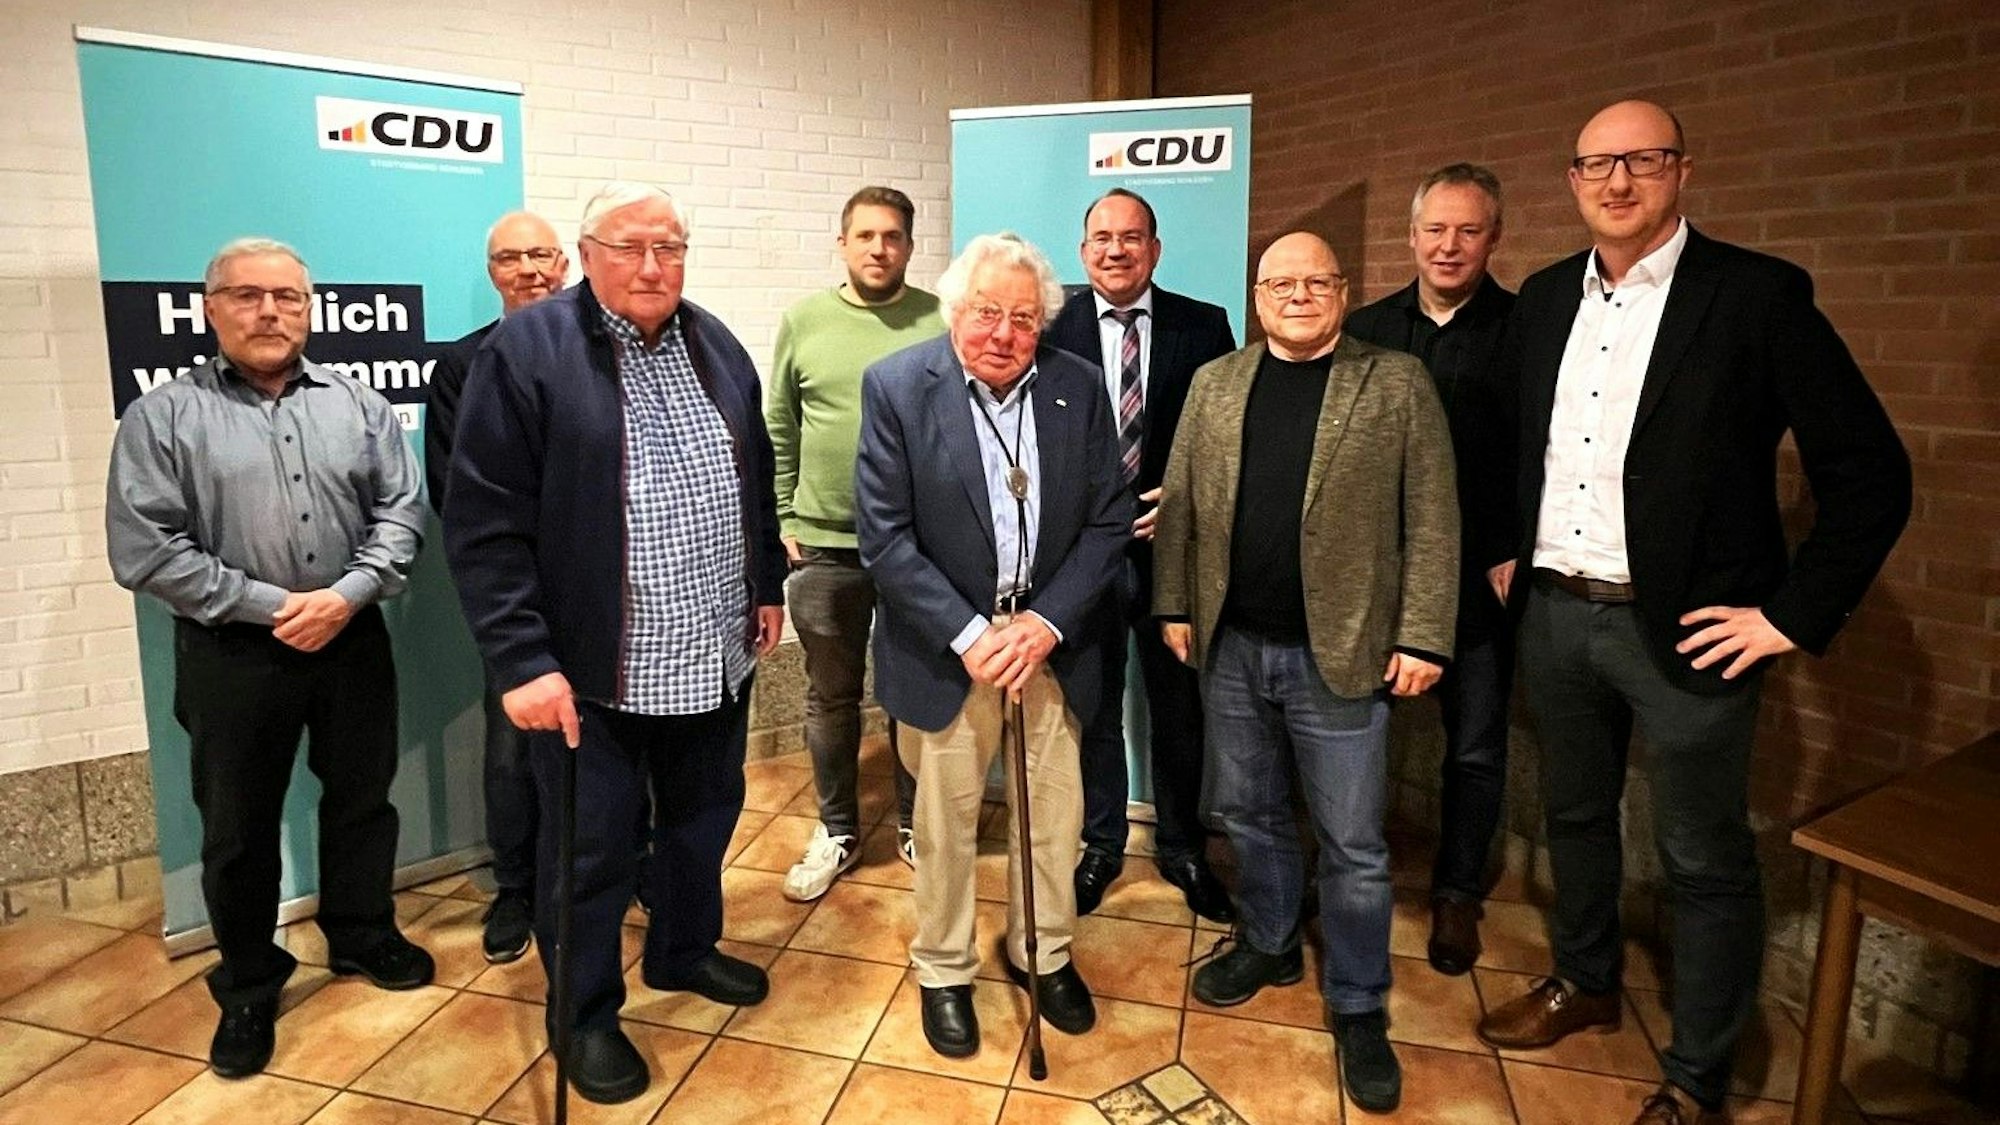 Die Geehrten stehen vor zwei CDU-Aufstellern.